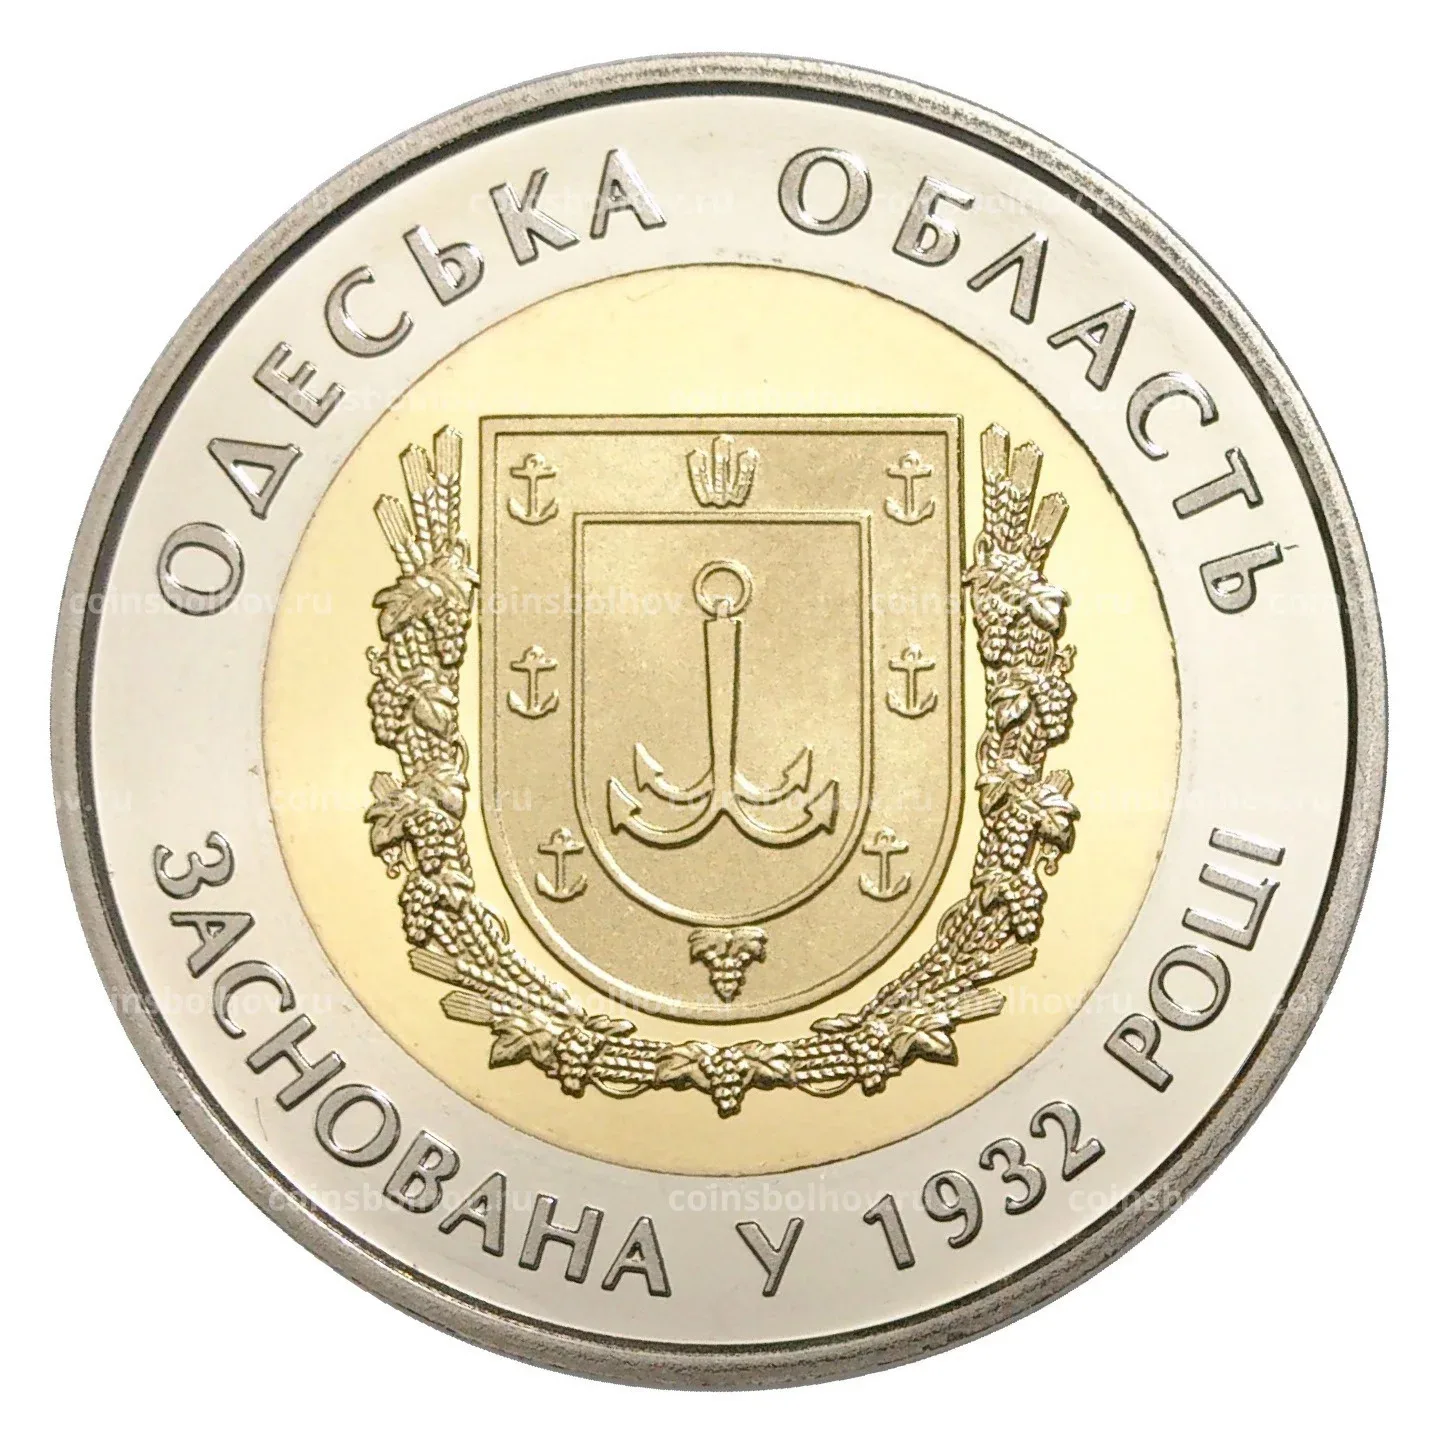 Coinsbolhov. 5 Гривен монета. Украинская гривна. Пять гривен Одесская область. Украина 5 гривен год кролика.